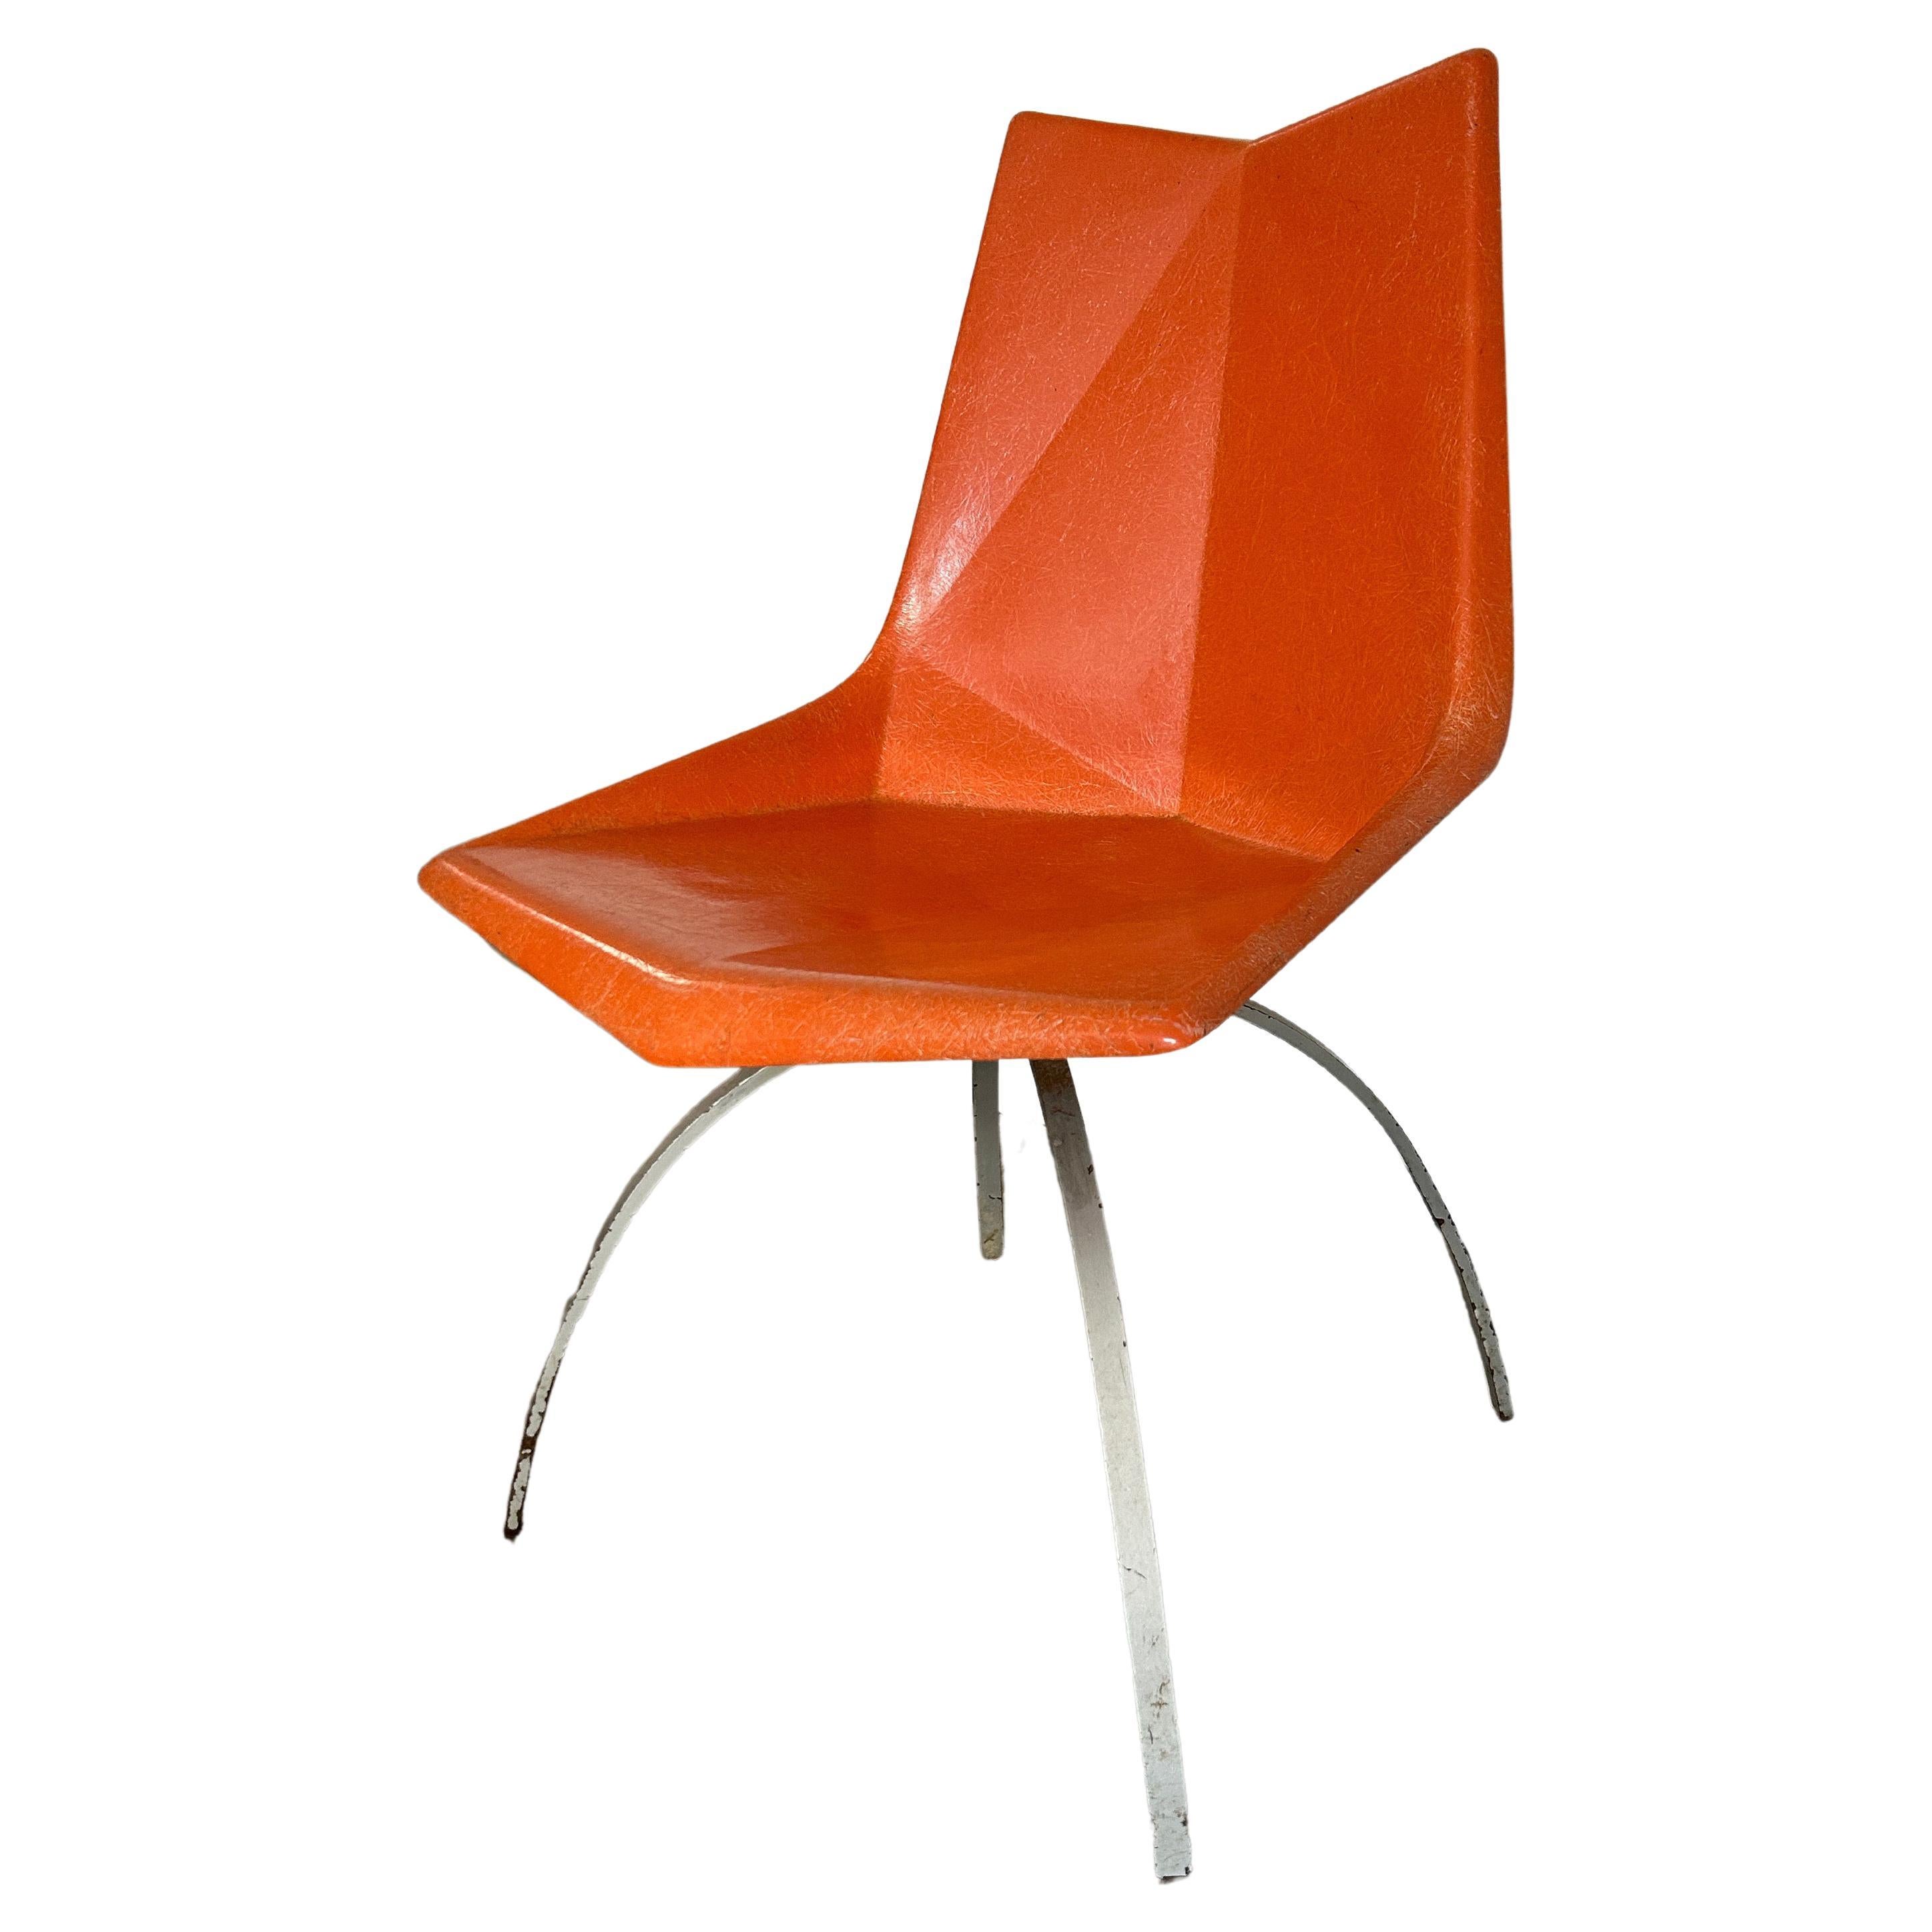 Original Mid century orange Paul McCobb Origami Fiberglass Chair spider base